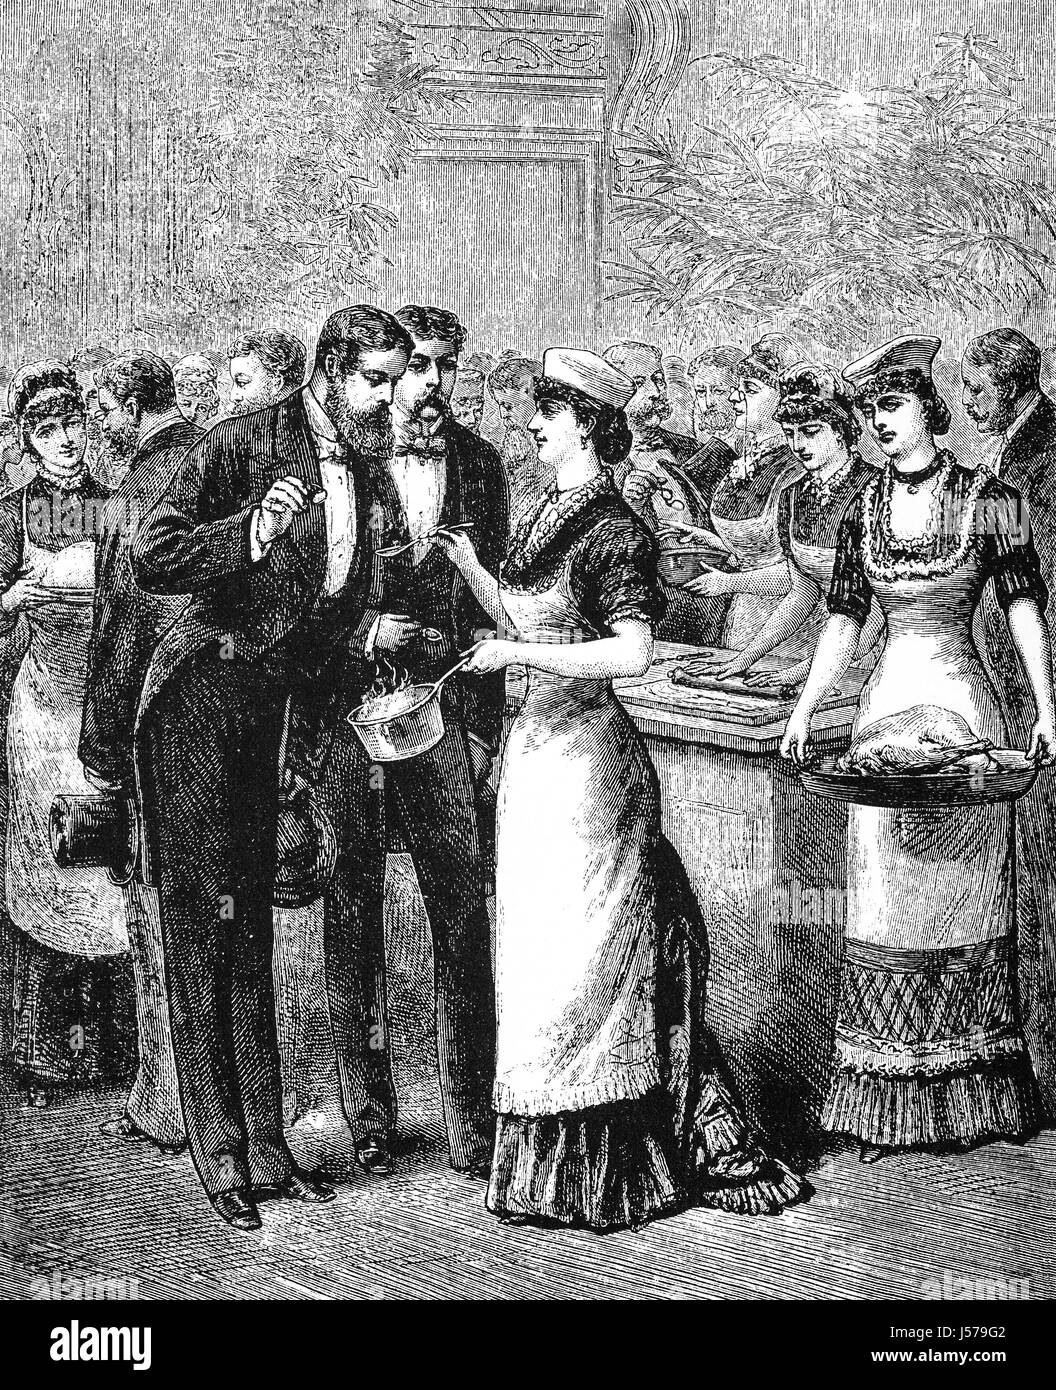 1879 : Les clients de l'alimentaire d'échantillonnage à l'American School of Cookery, ville de Philadelphie, Pennsylvanie, États-Unis d'Amérique. Banque D'Images